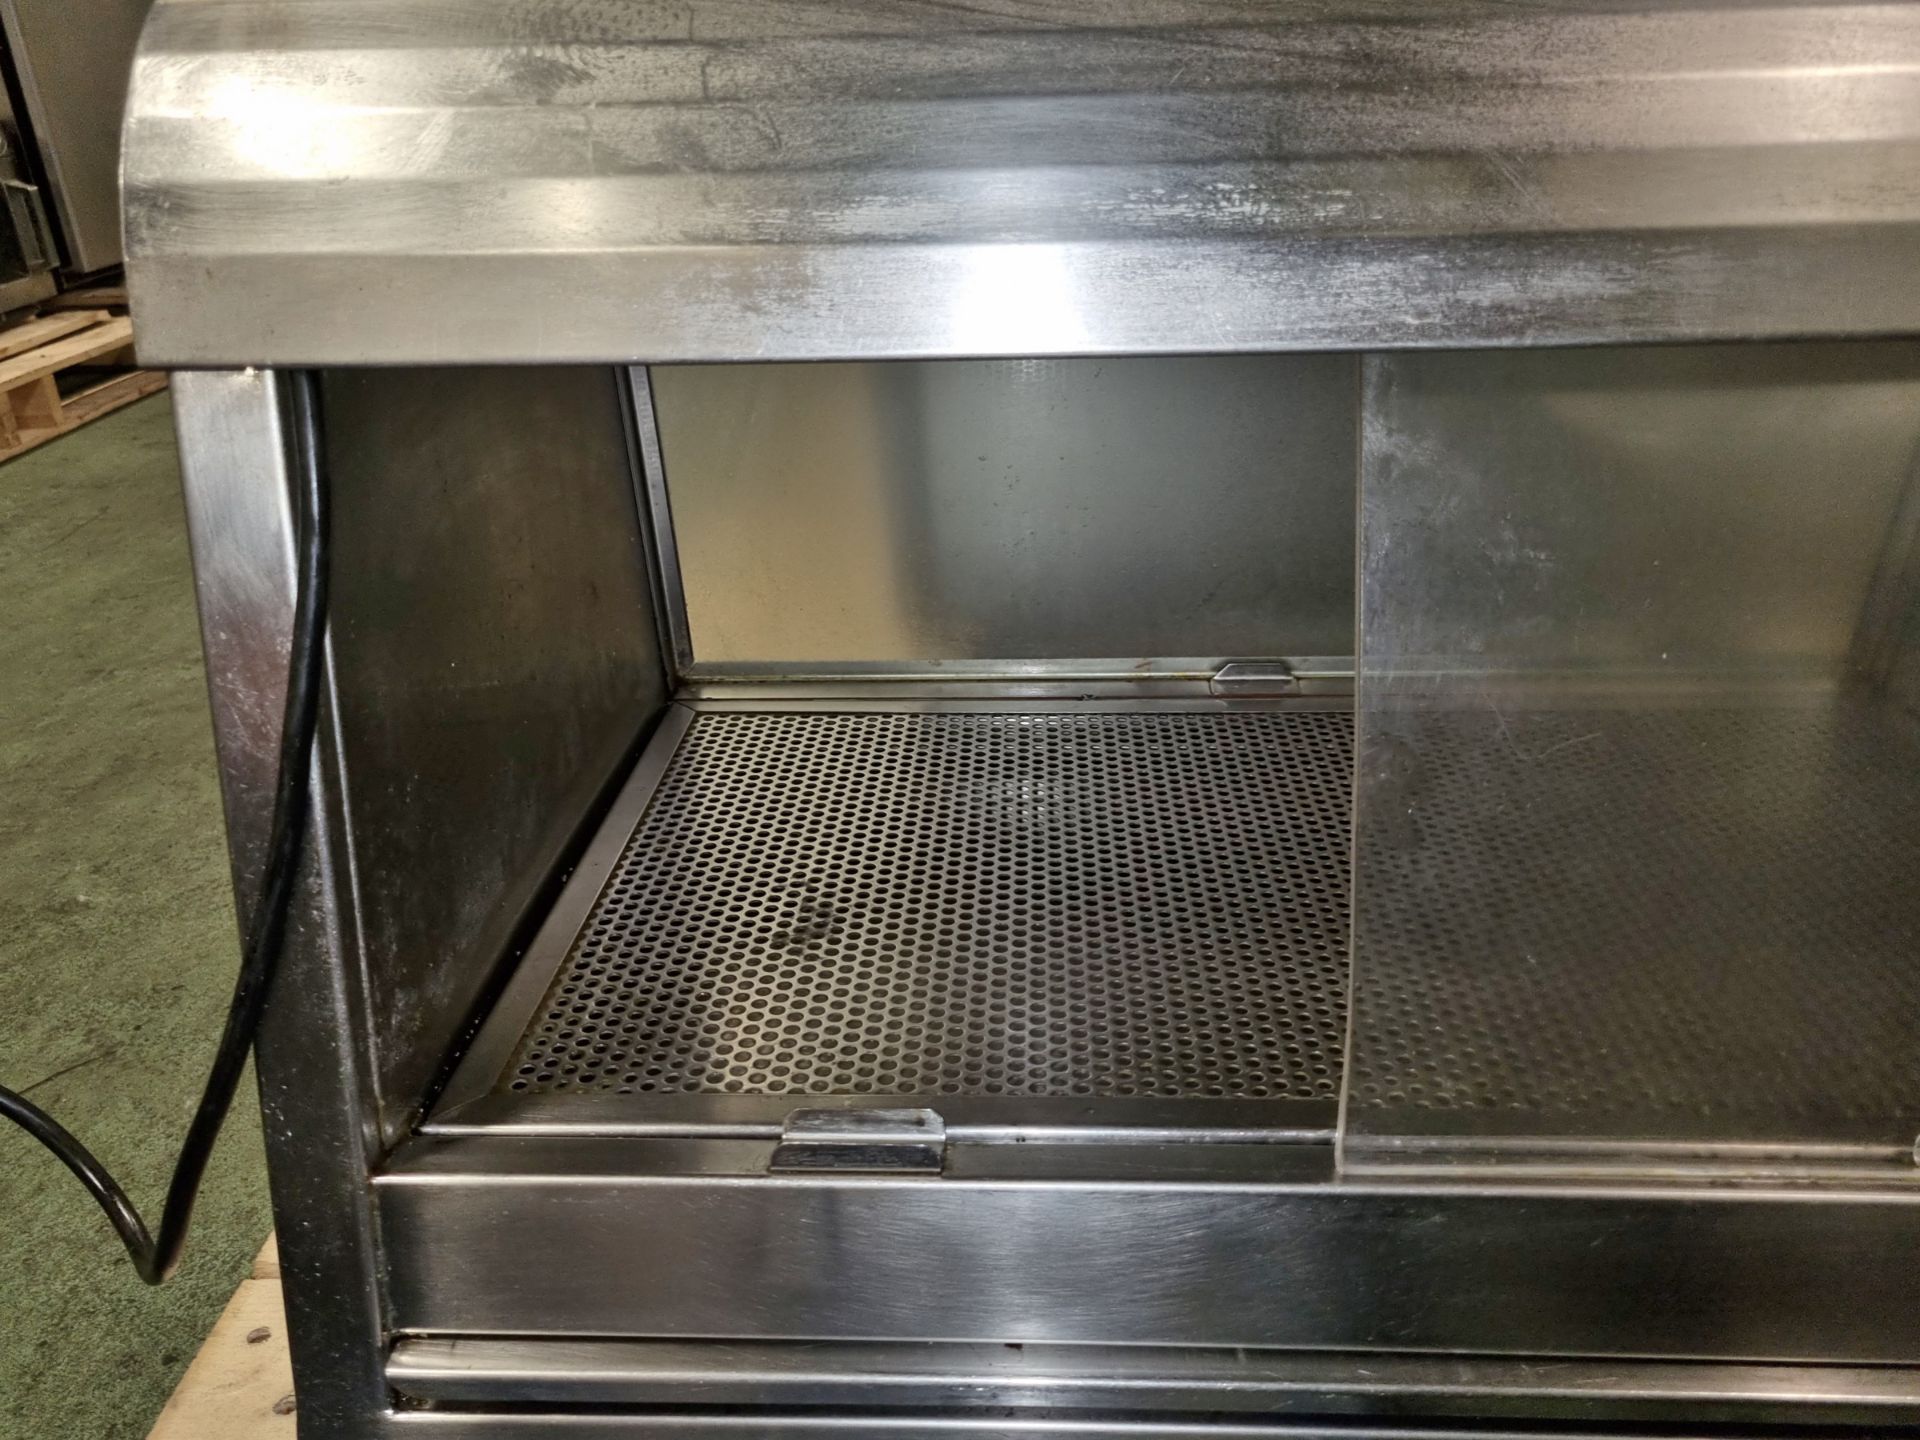 Stainless steel heated countertop food display - W 760 x D 530 x H 530mm - MISSING SLIDE DOOR - Image 3 of 4